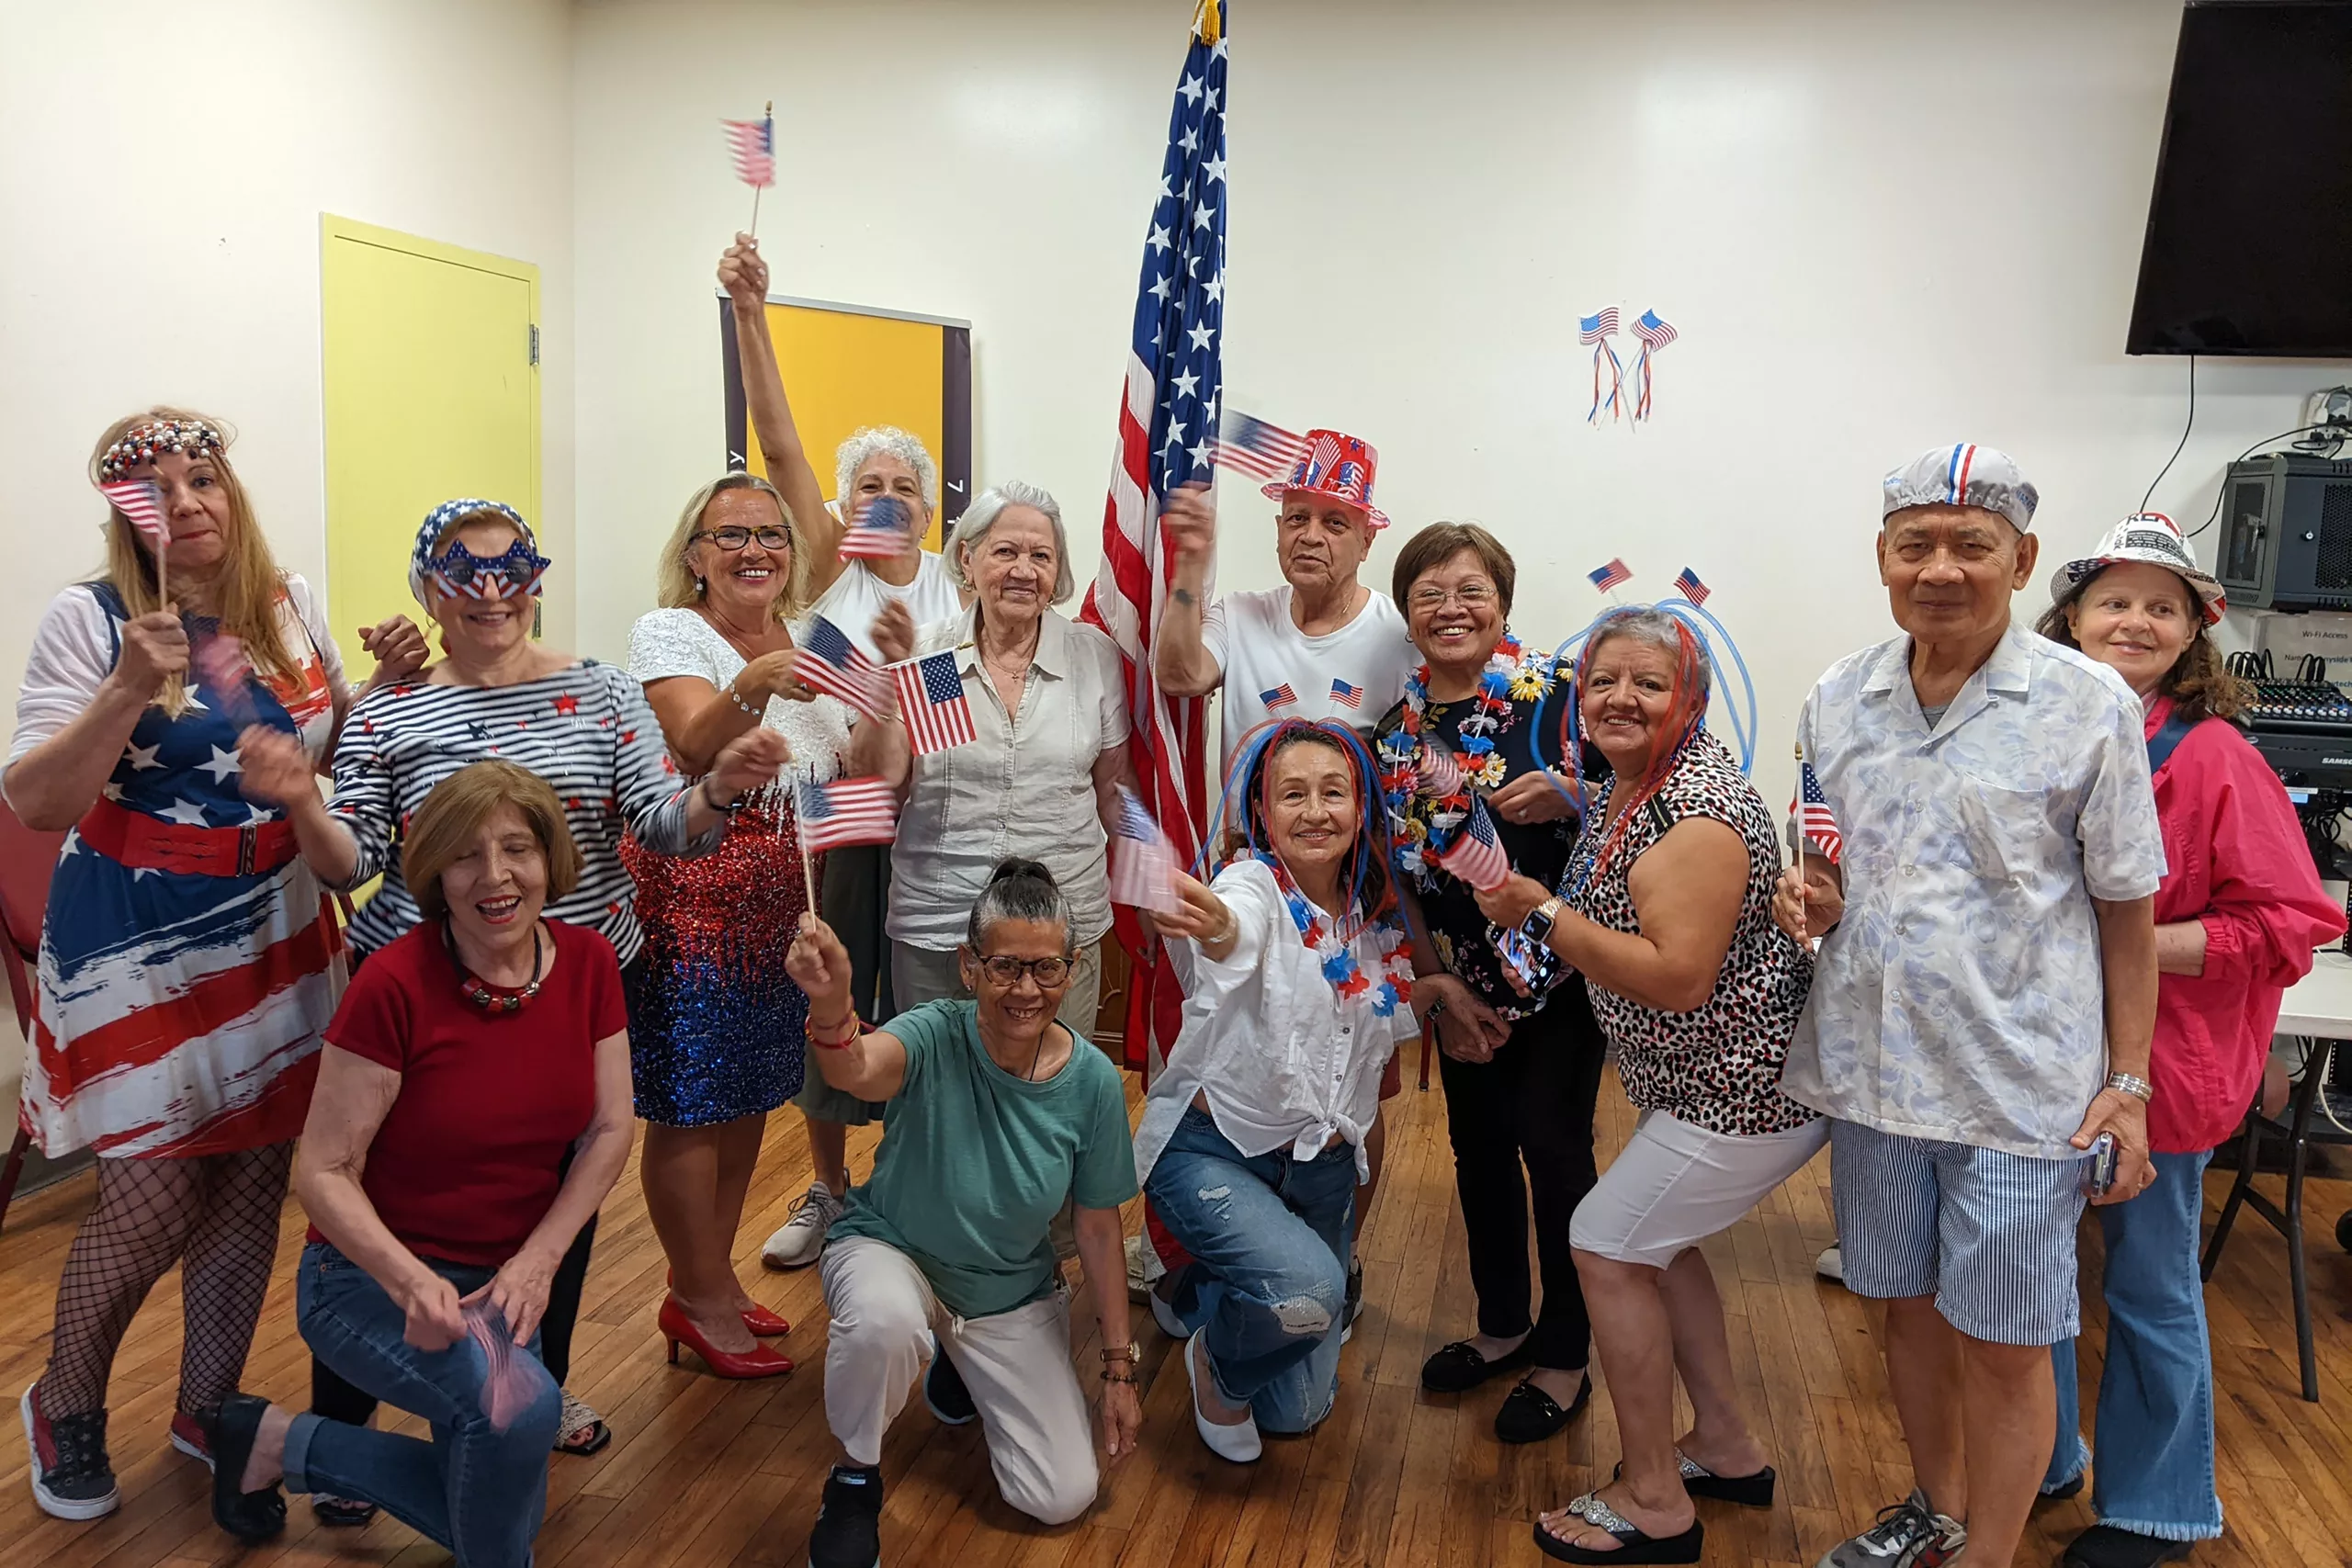 July 4th Celebration at Our Older Adult Center